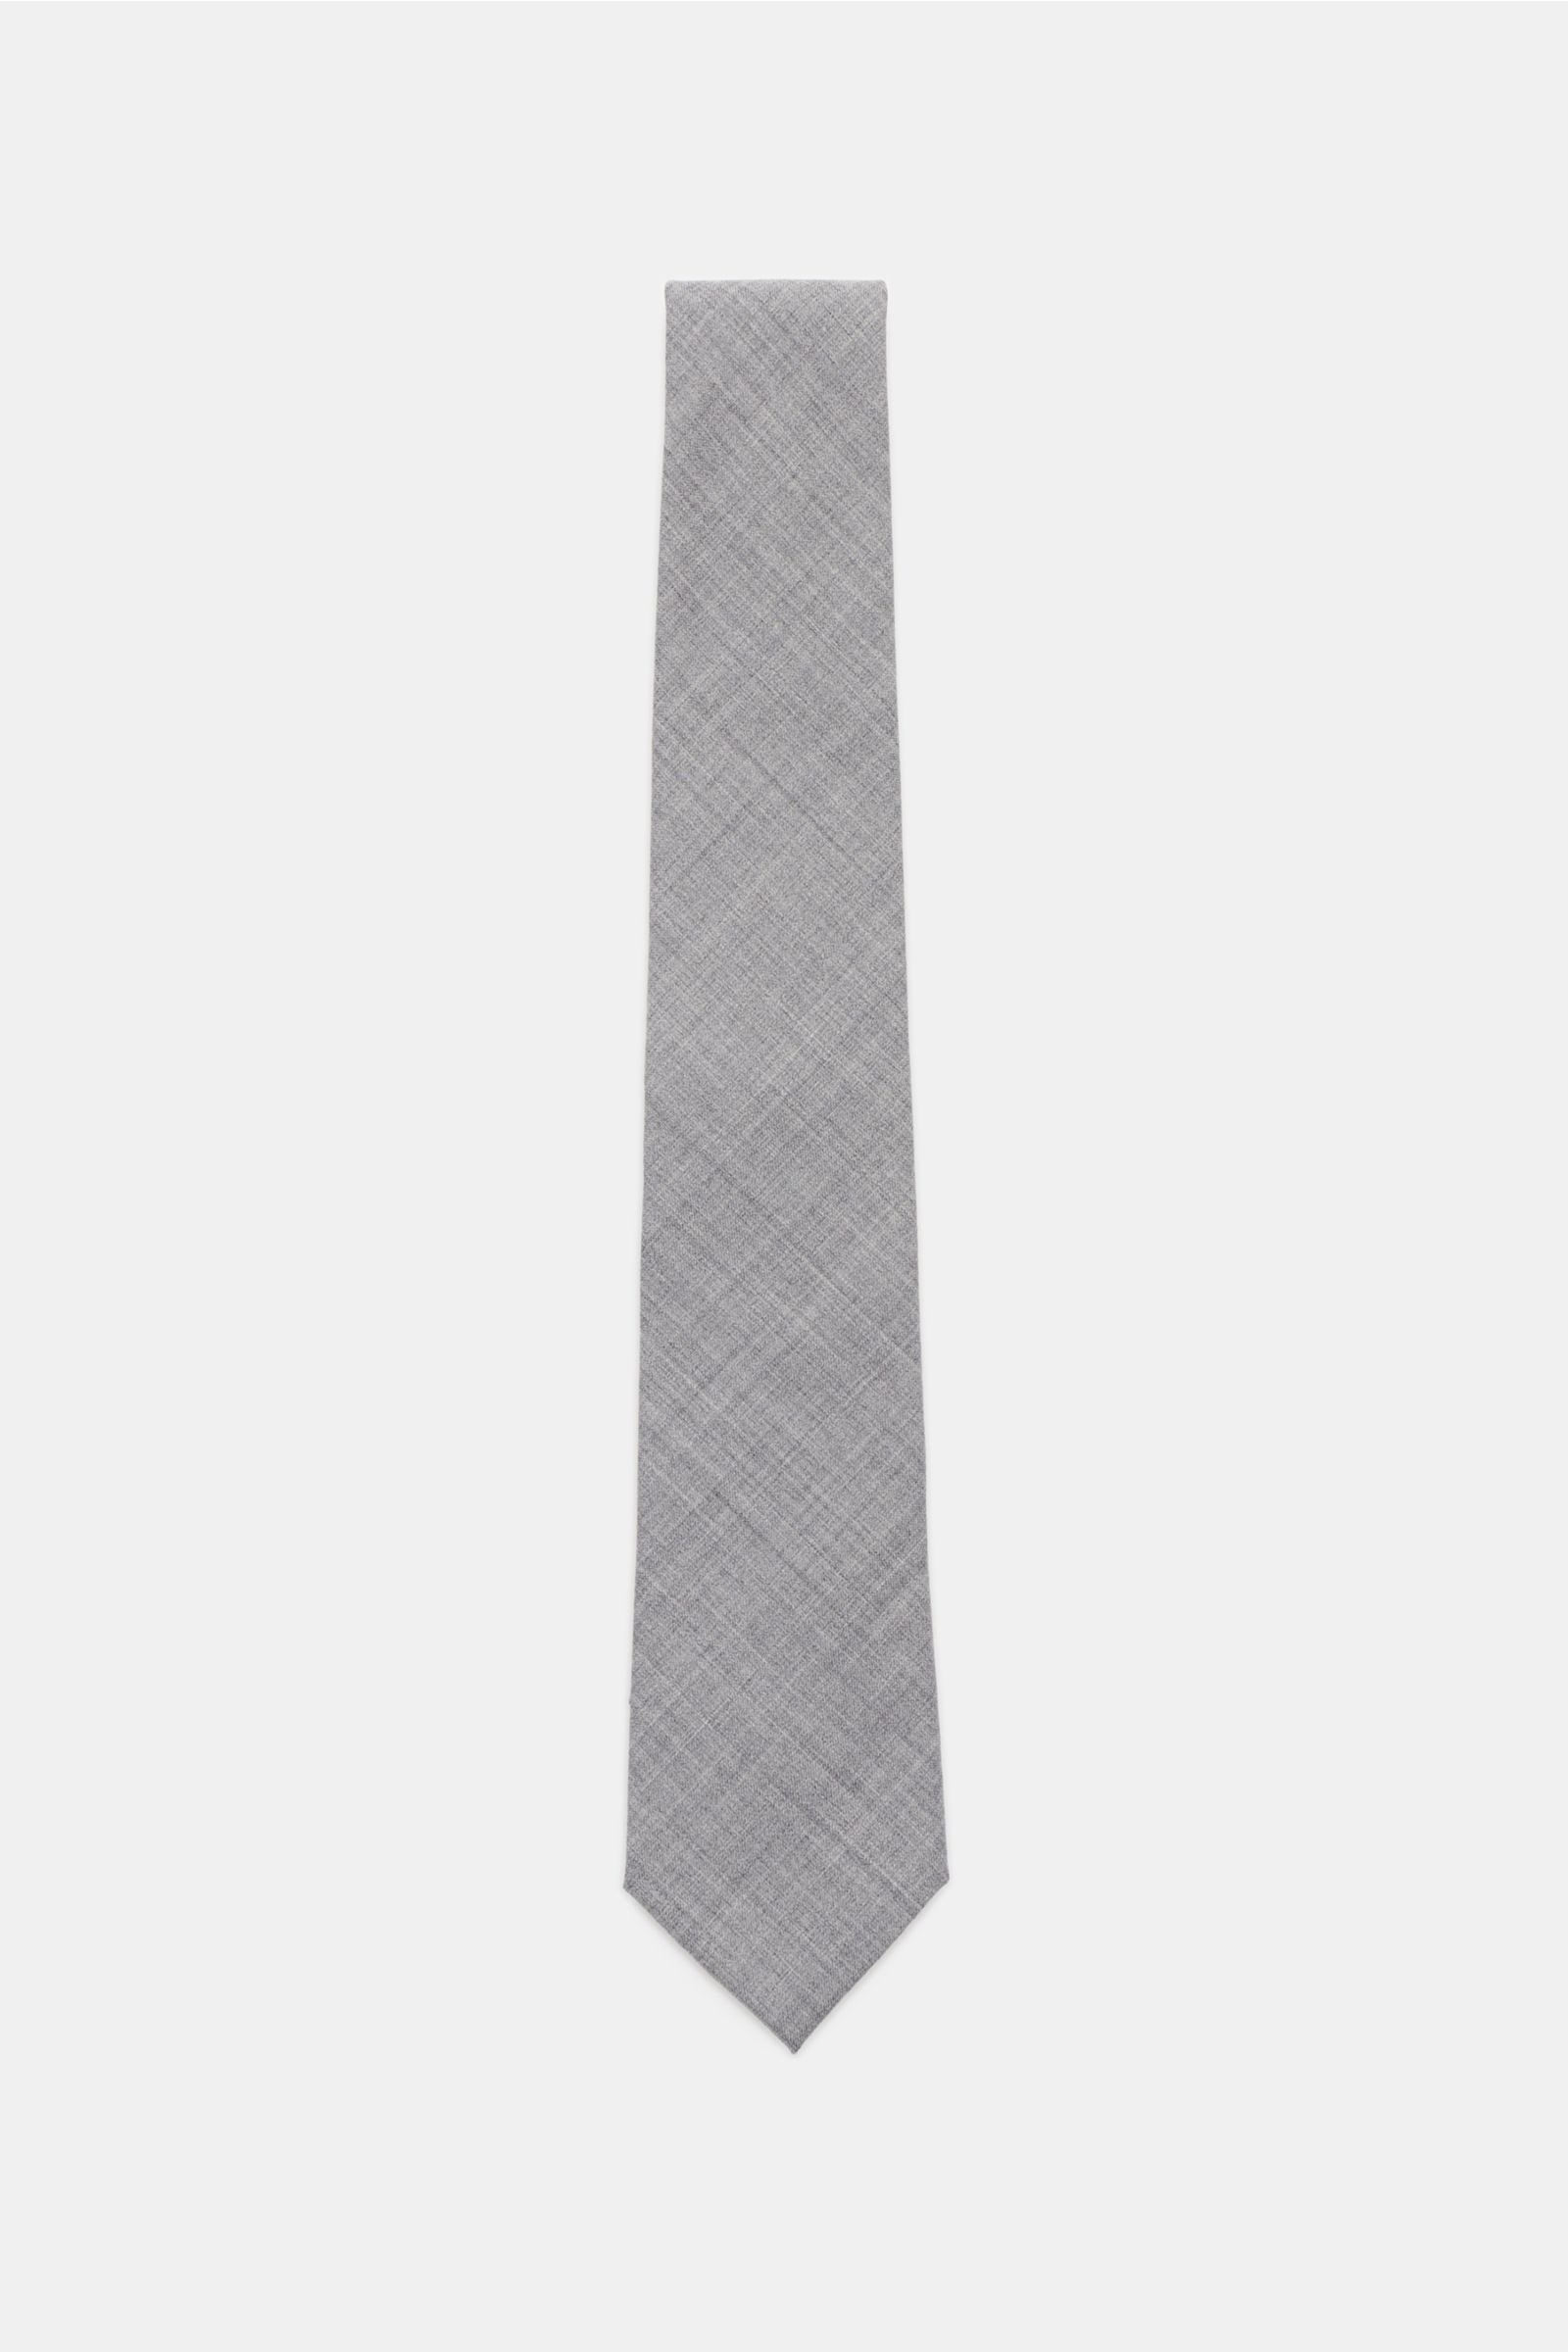 Wool tie grey